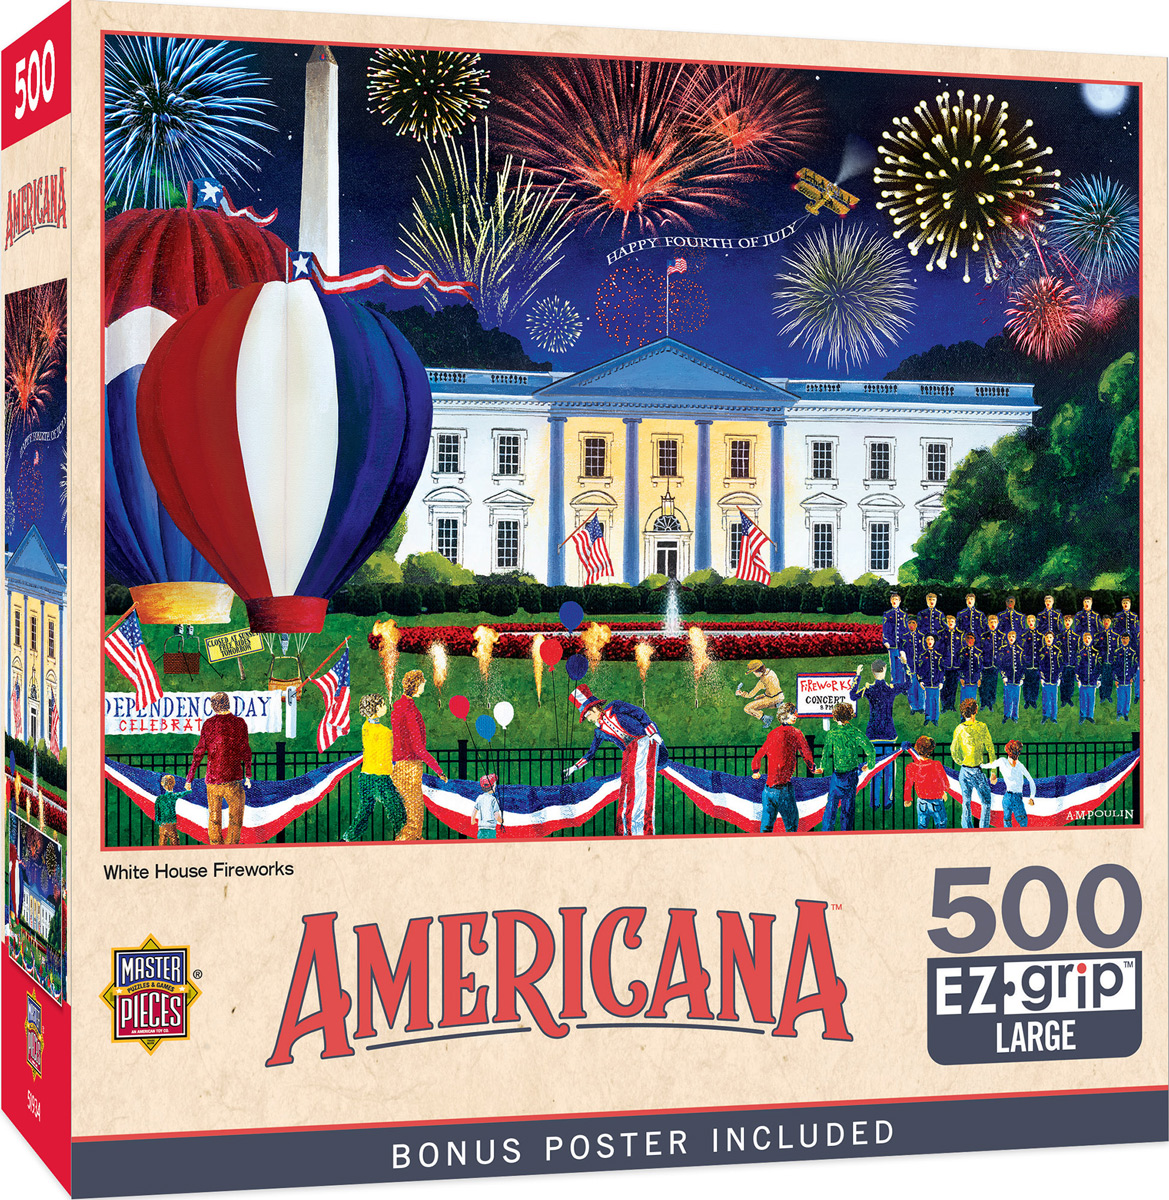 White House Fireworks